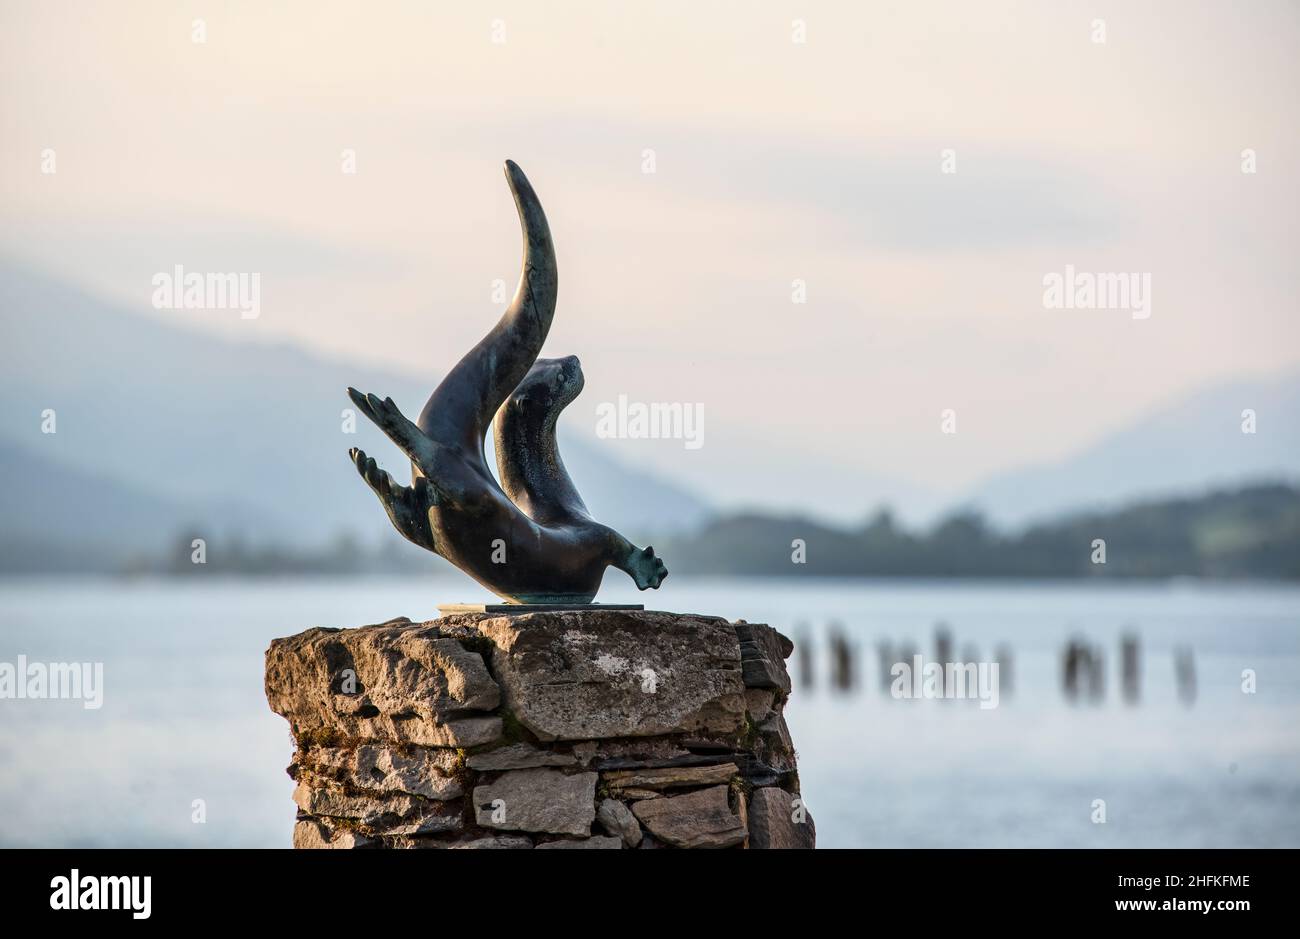 TEKO la scultura della lontra da nuoto a Lomond Shores, Loch Lomond, Scozia Foto Stock